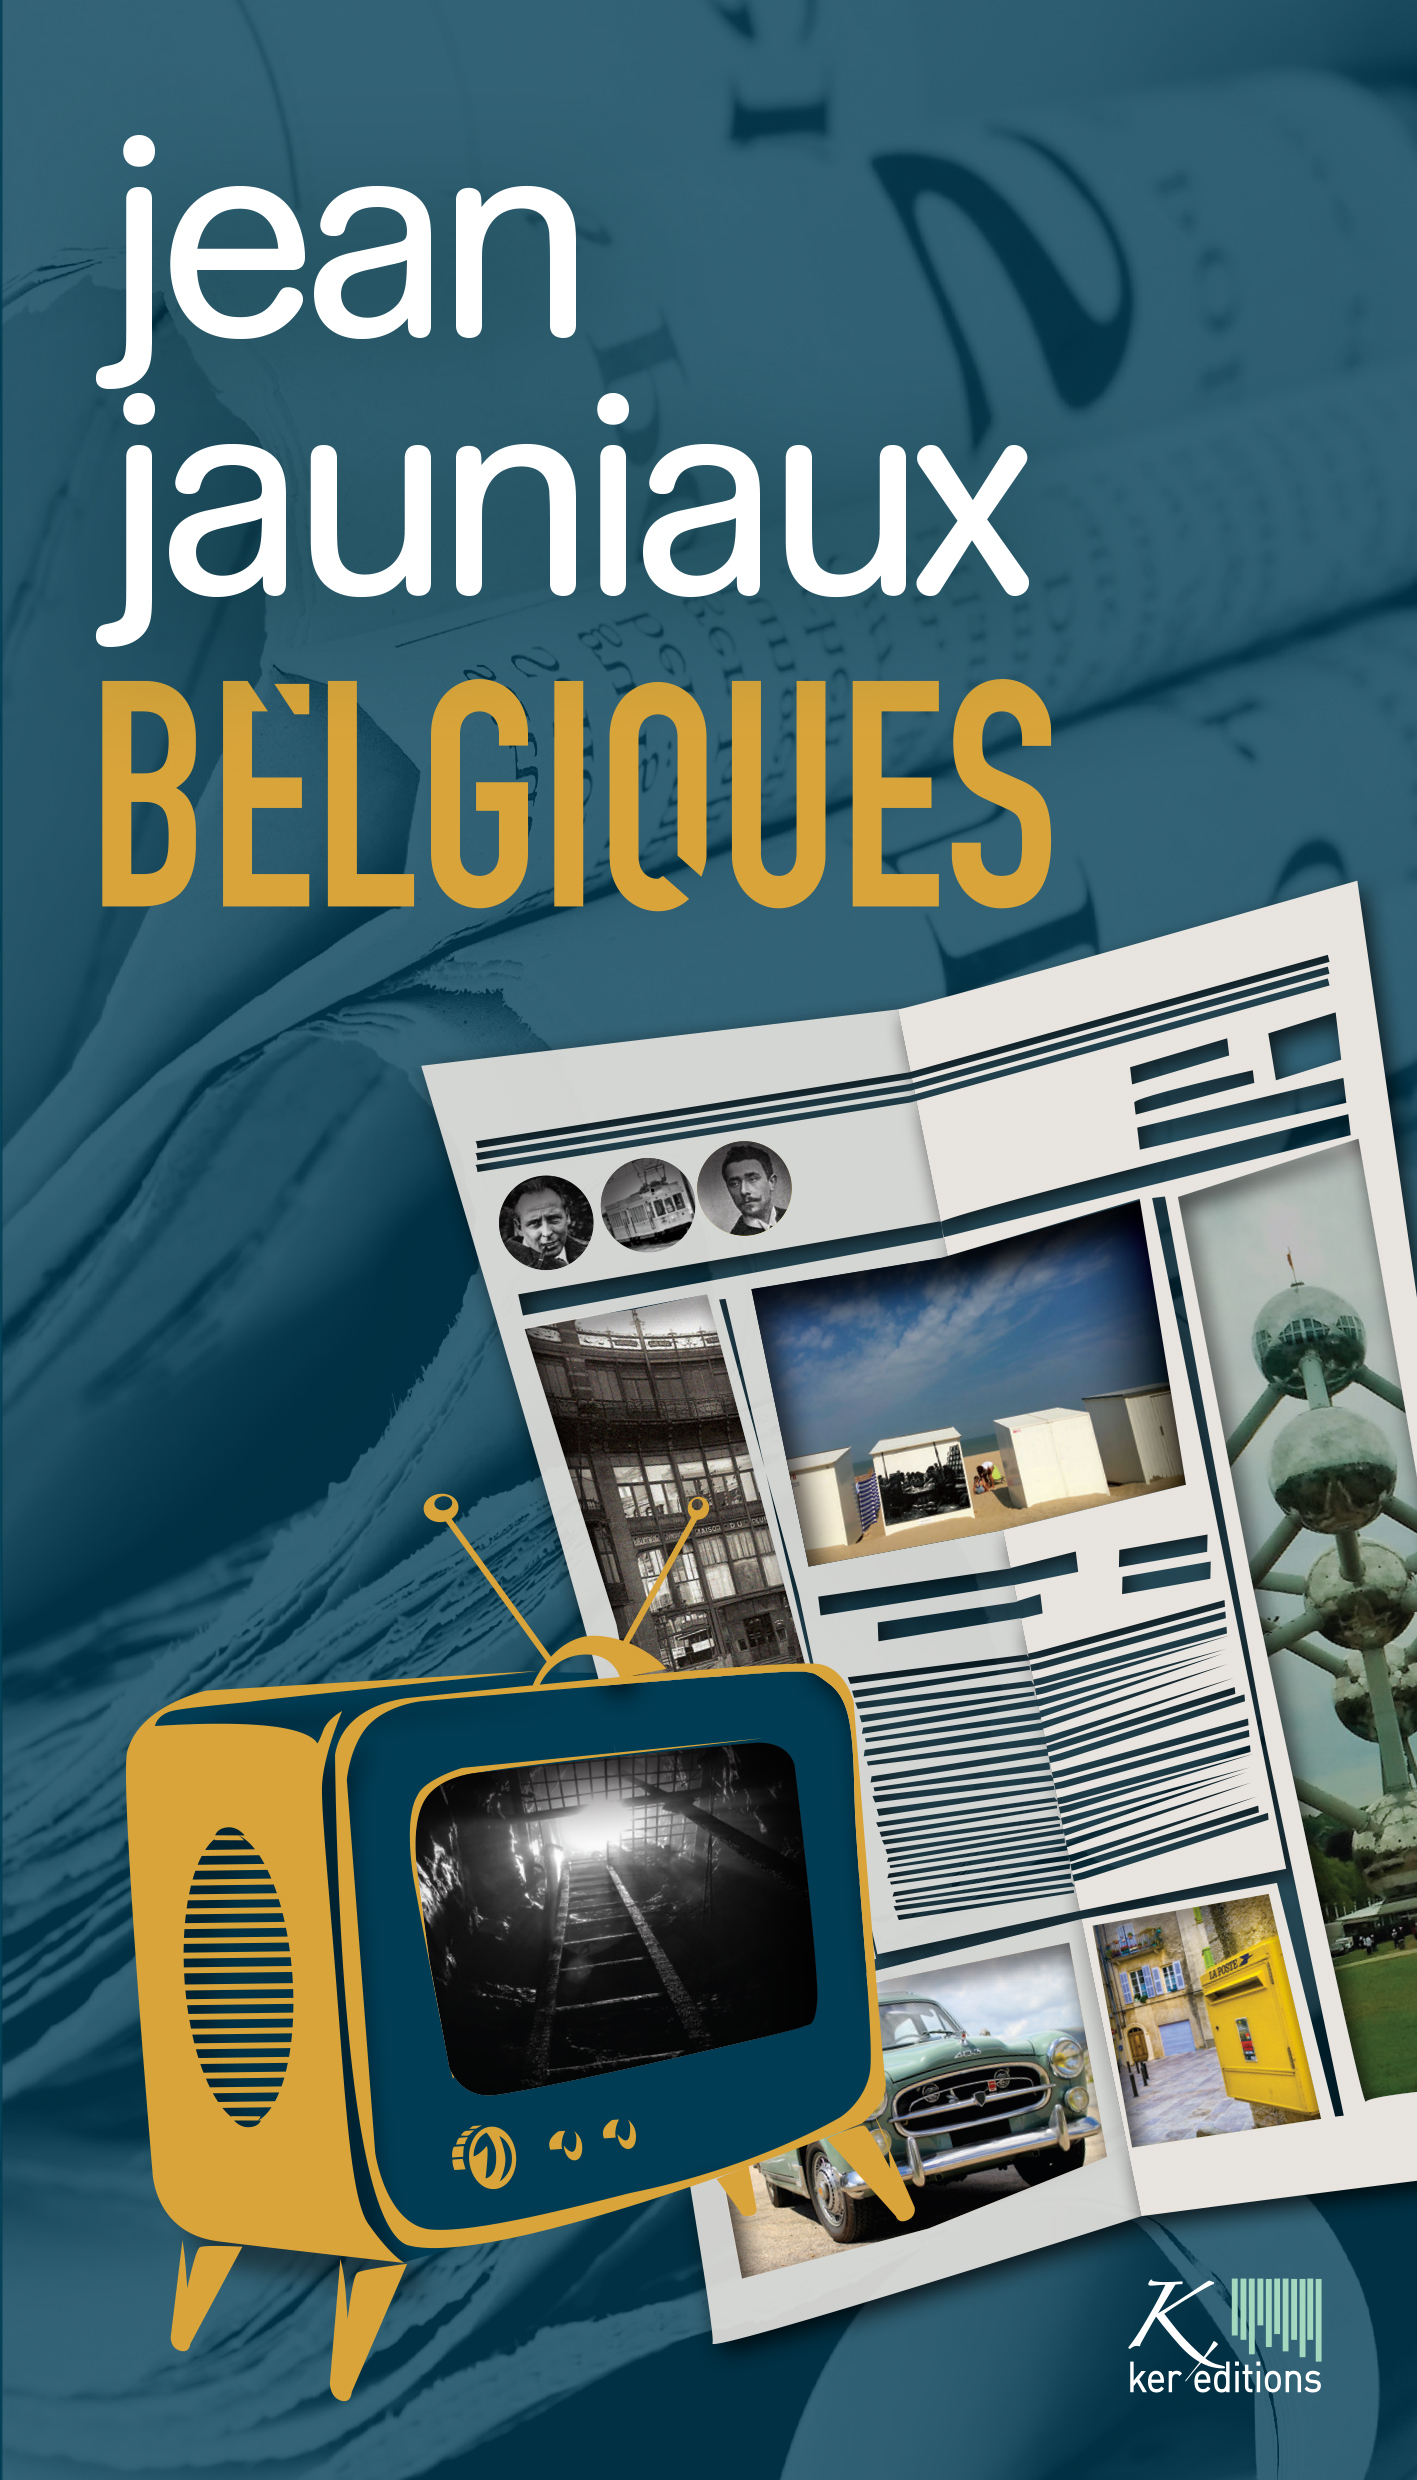 Résultat de recherche d'images pour "jean jauniaux belgiques"